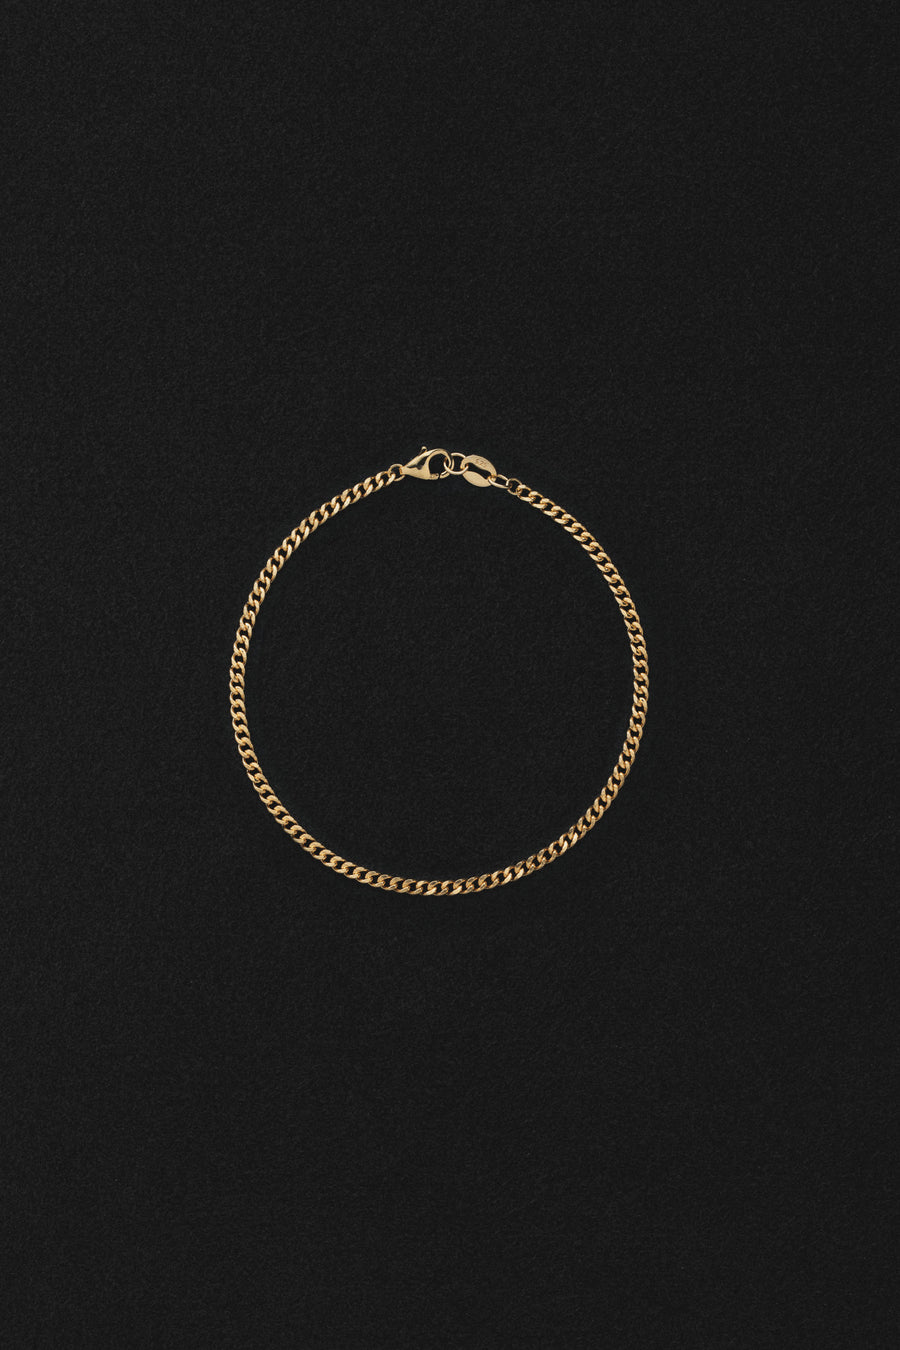 Curb chain bracelet